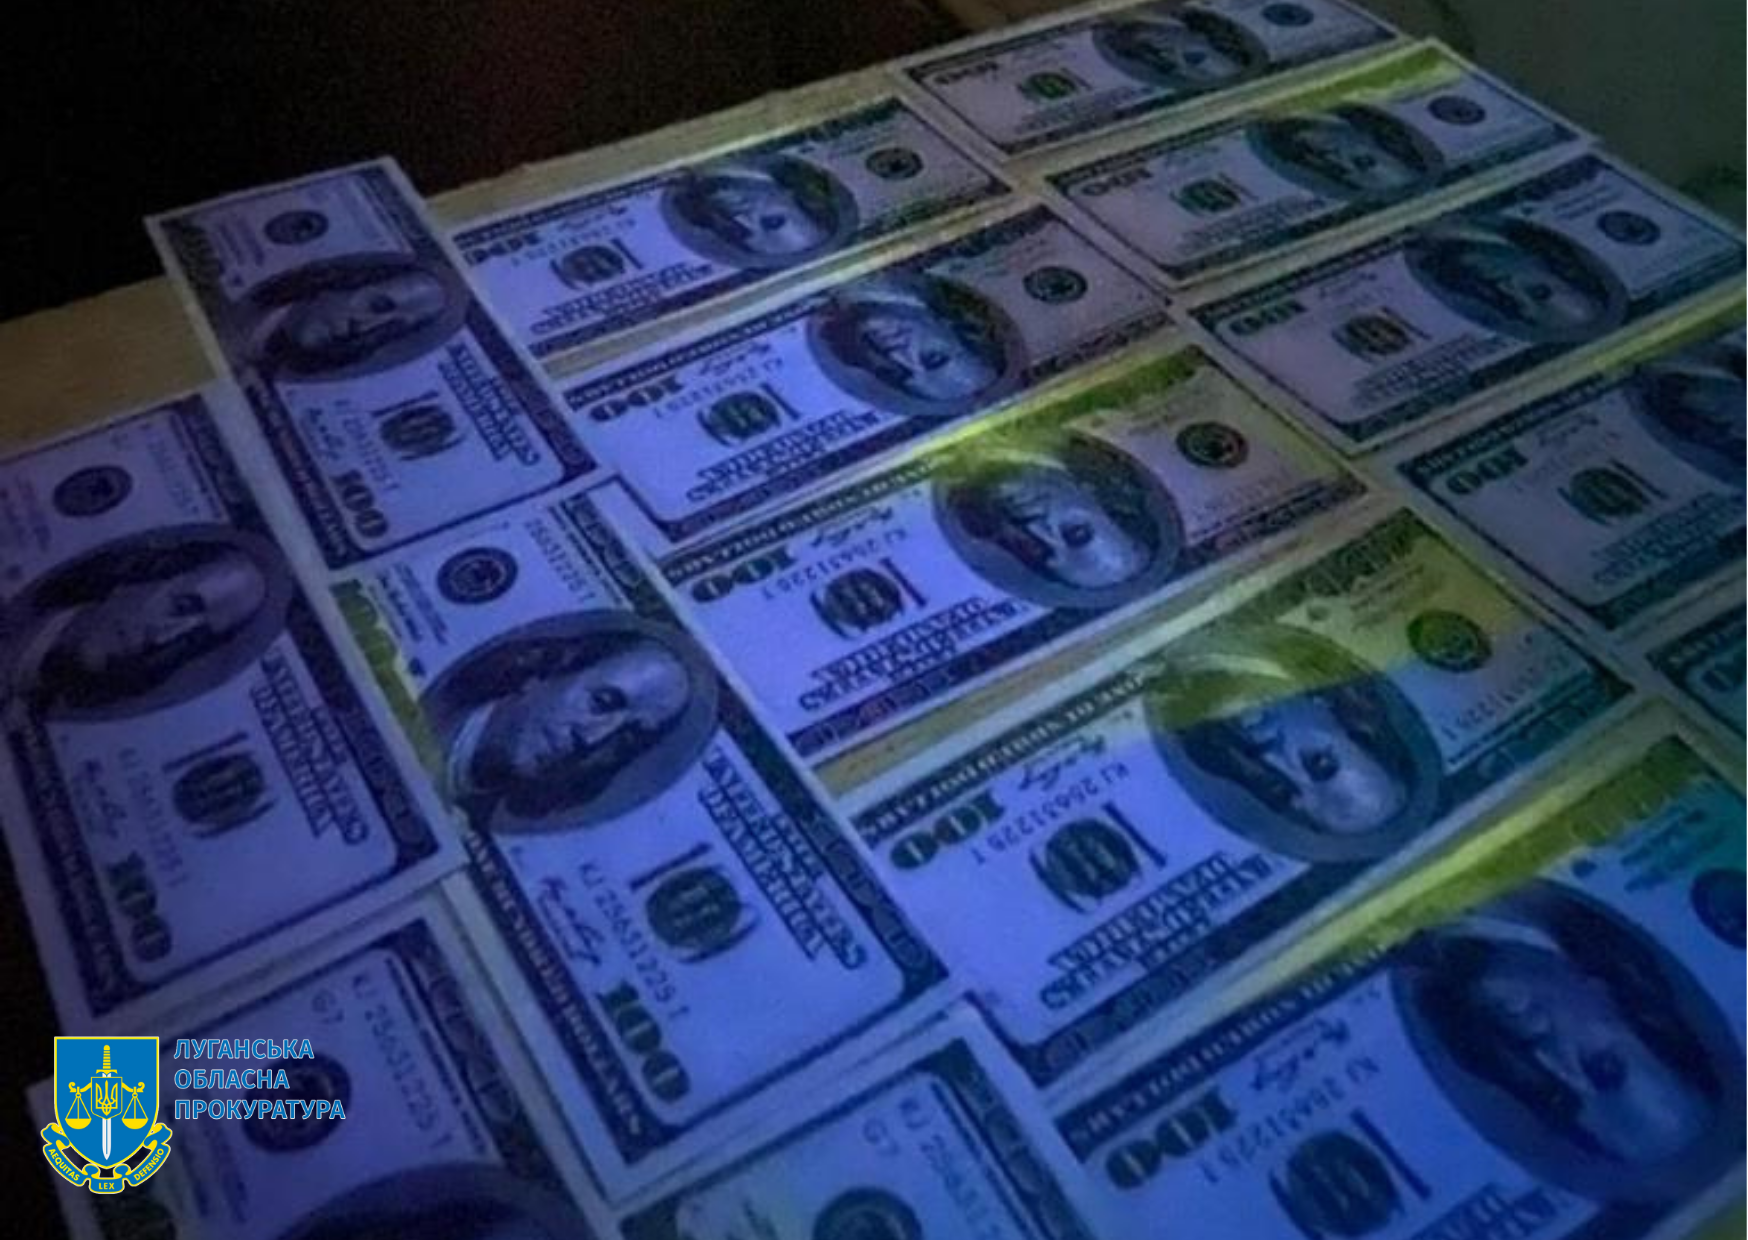 2000 доларів США за непритягненя підприємця до адмінвідповідальності – на Луганщині викрито інспектора Держпраці